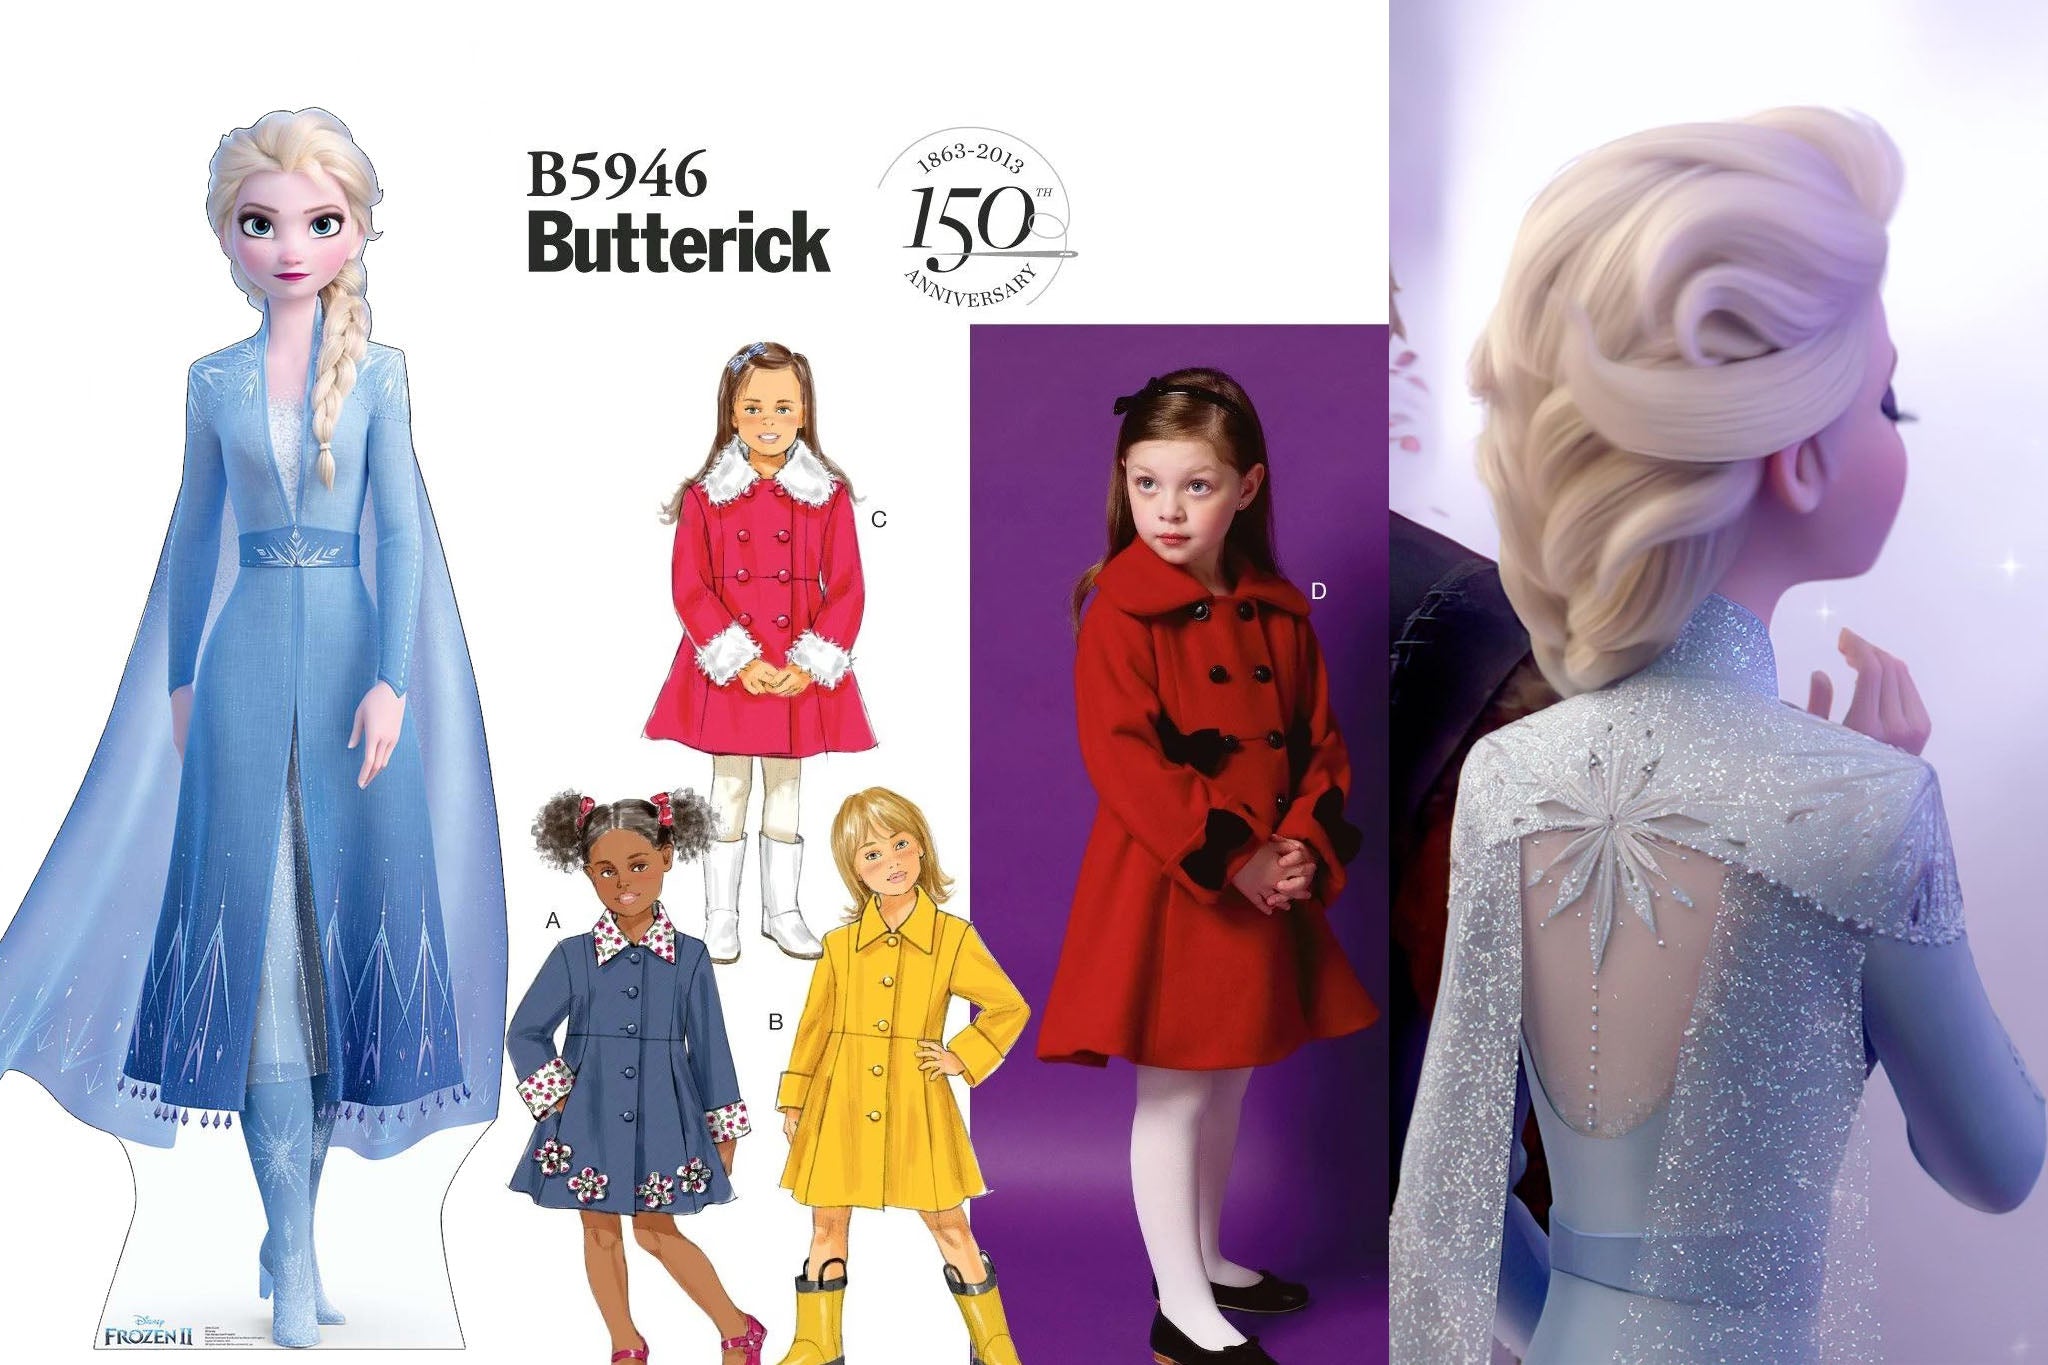 Frozen Inspired Queen Elsa Dress Tutorial